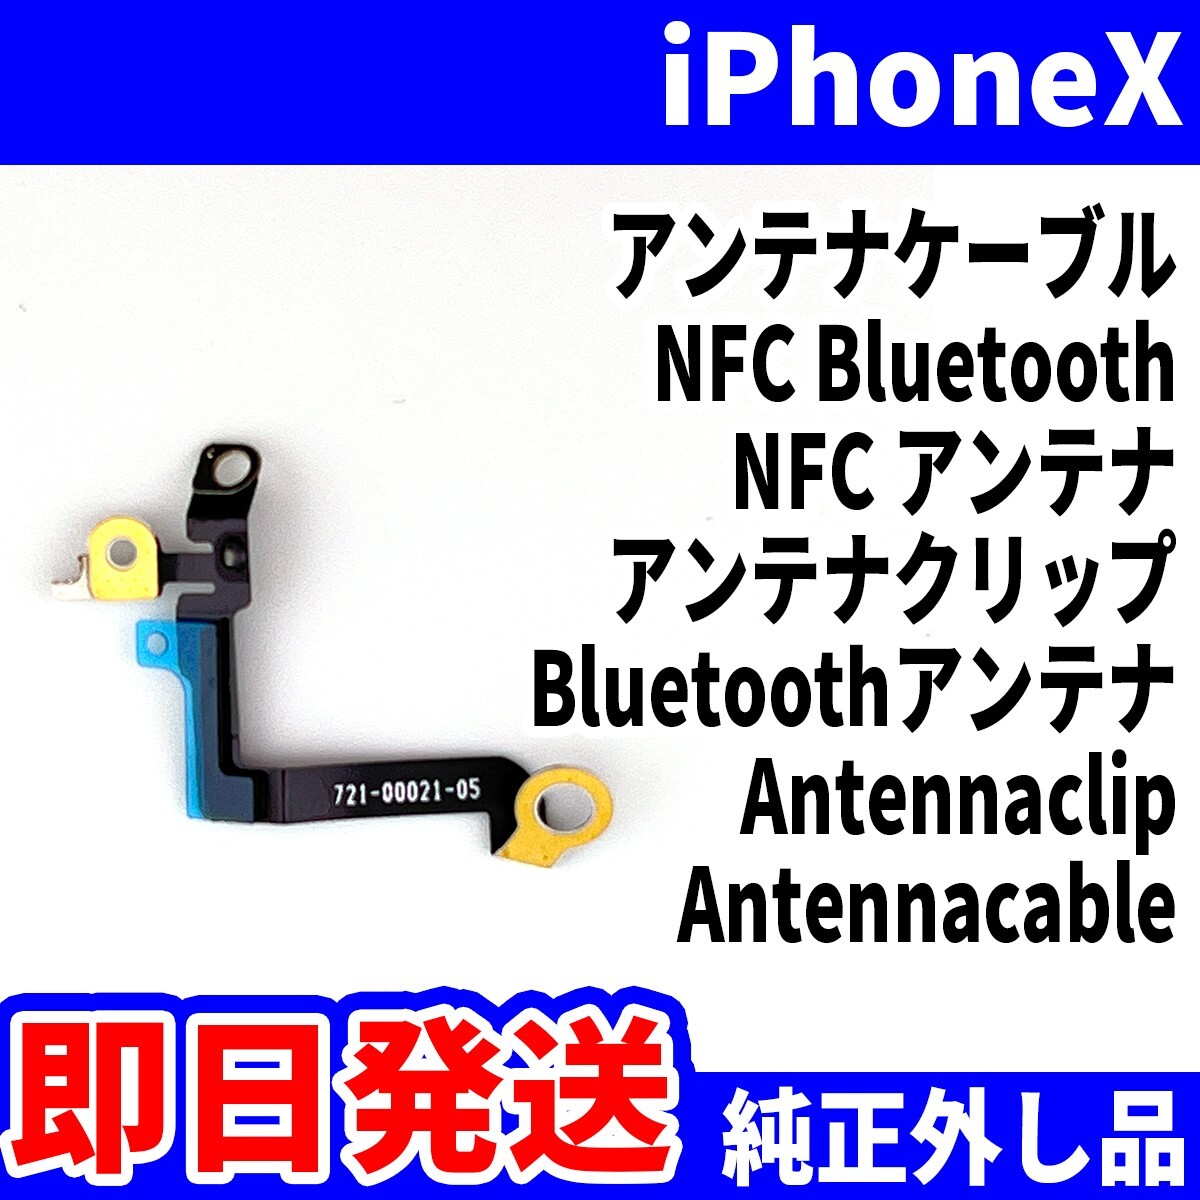 即日発送! 純正外し品! iPhoneX アンテナケーブル ICカードが使えない NFC Bluetooth NFC アンテナ Bluetooth スマホ パーツ 交換 修理用_画像1